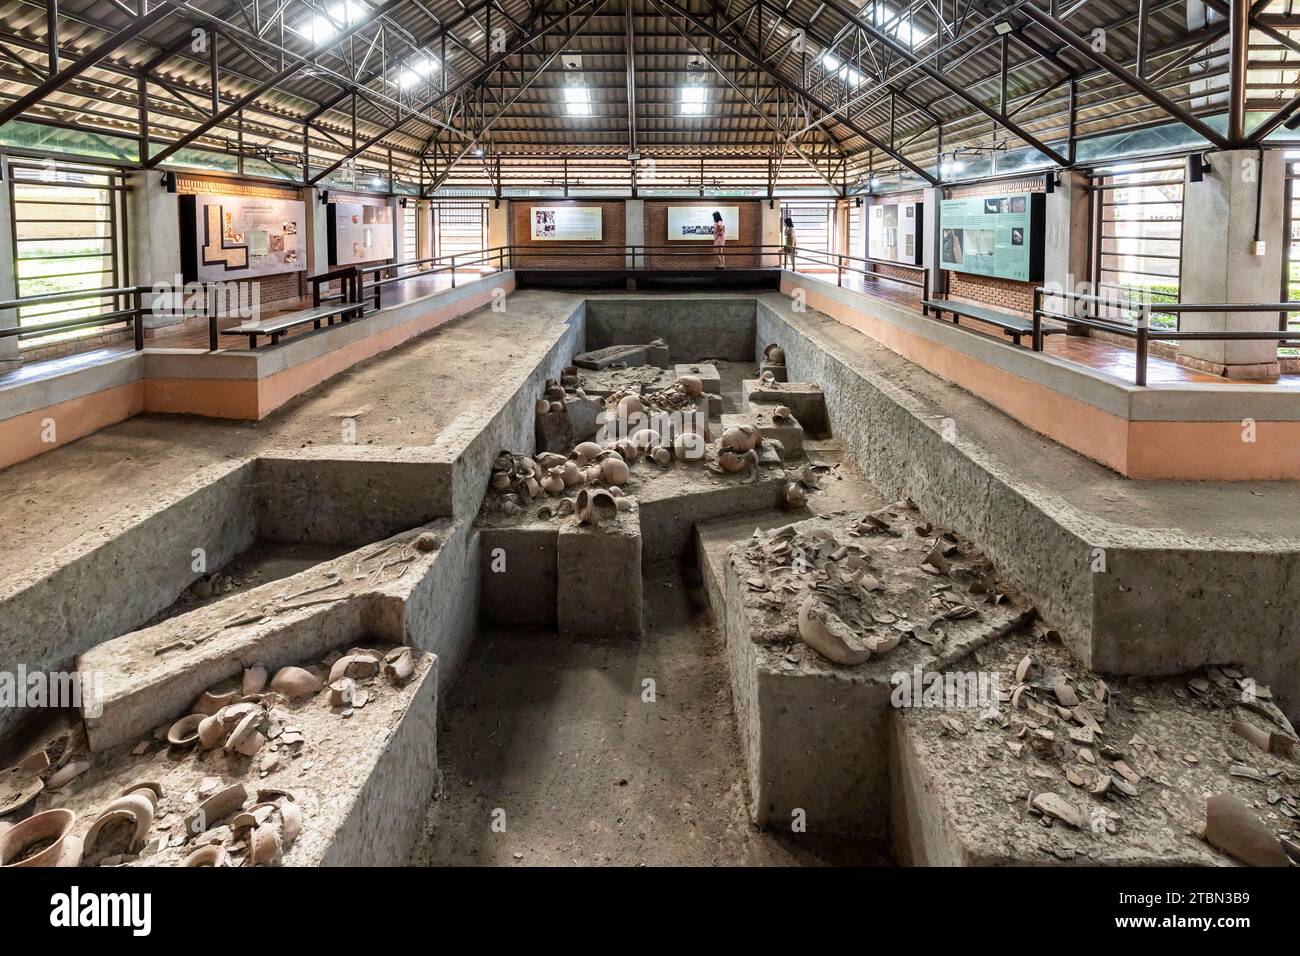 Ban Chiang Musée national, exposition du site de fouilles, à Wat Pho si Nai, Ban Chiang, Udon Thani, Isan, Thaïlande, Asie du Sud-est, Asie Banque D'Images